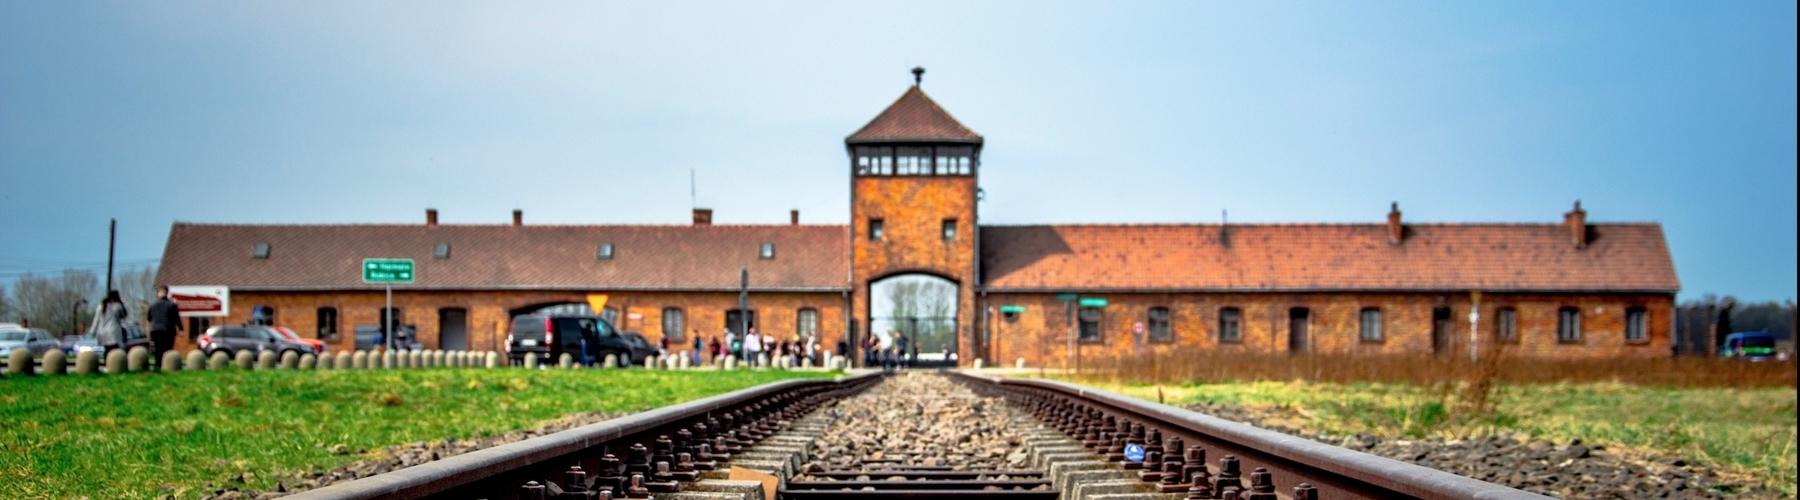 excursión al Campo de Concentración de Auschwitz